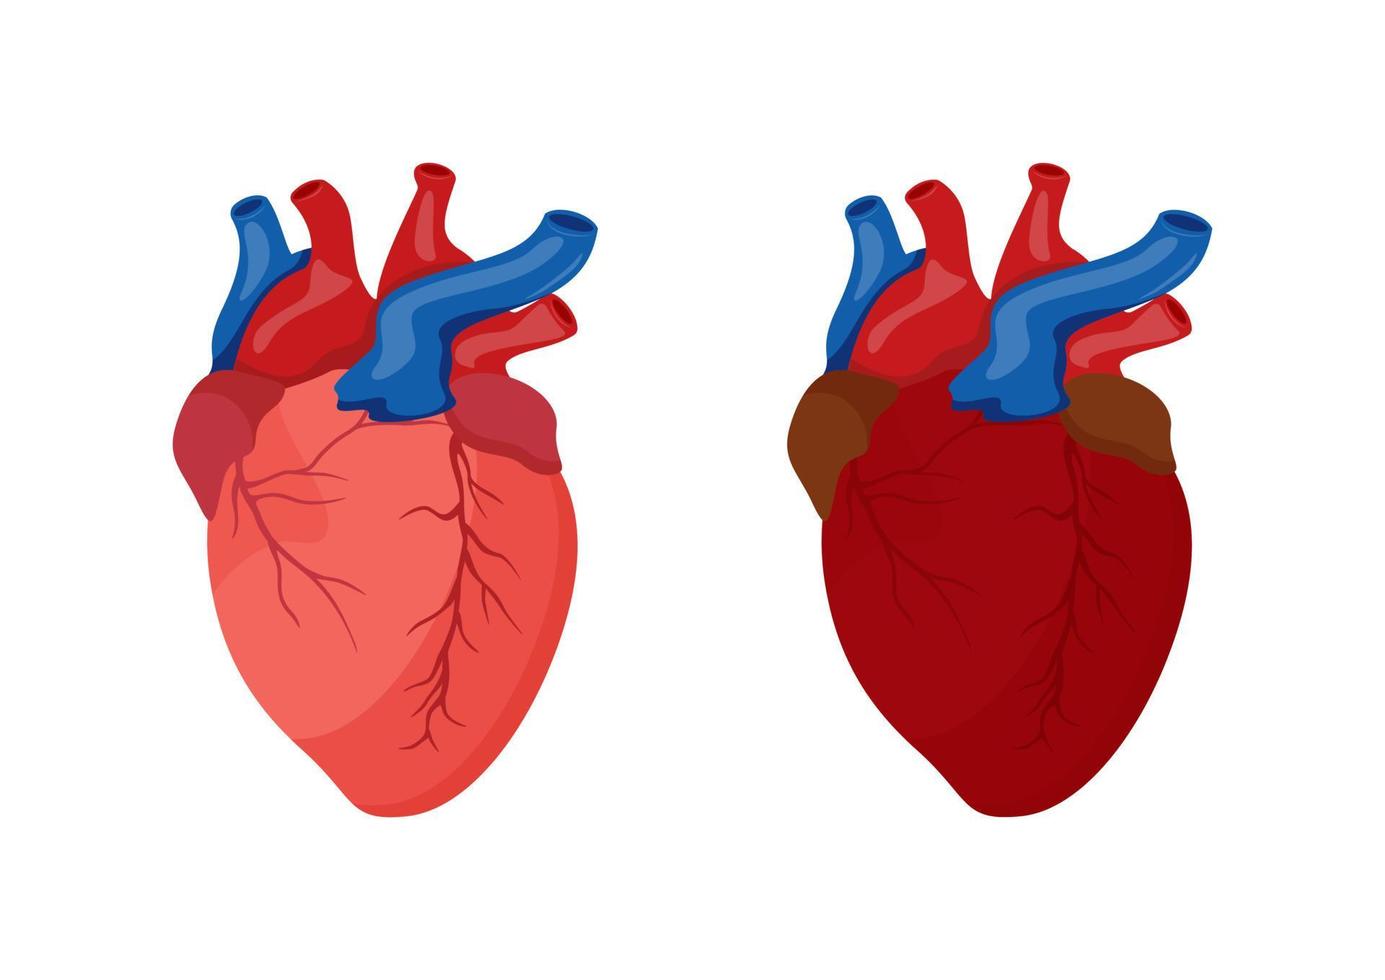 diseño de dibujos animados del corazón humano. ilustración vectorial del corazón humano aislado sobre fondo blanco vector